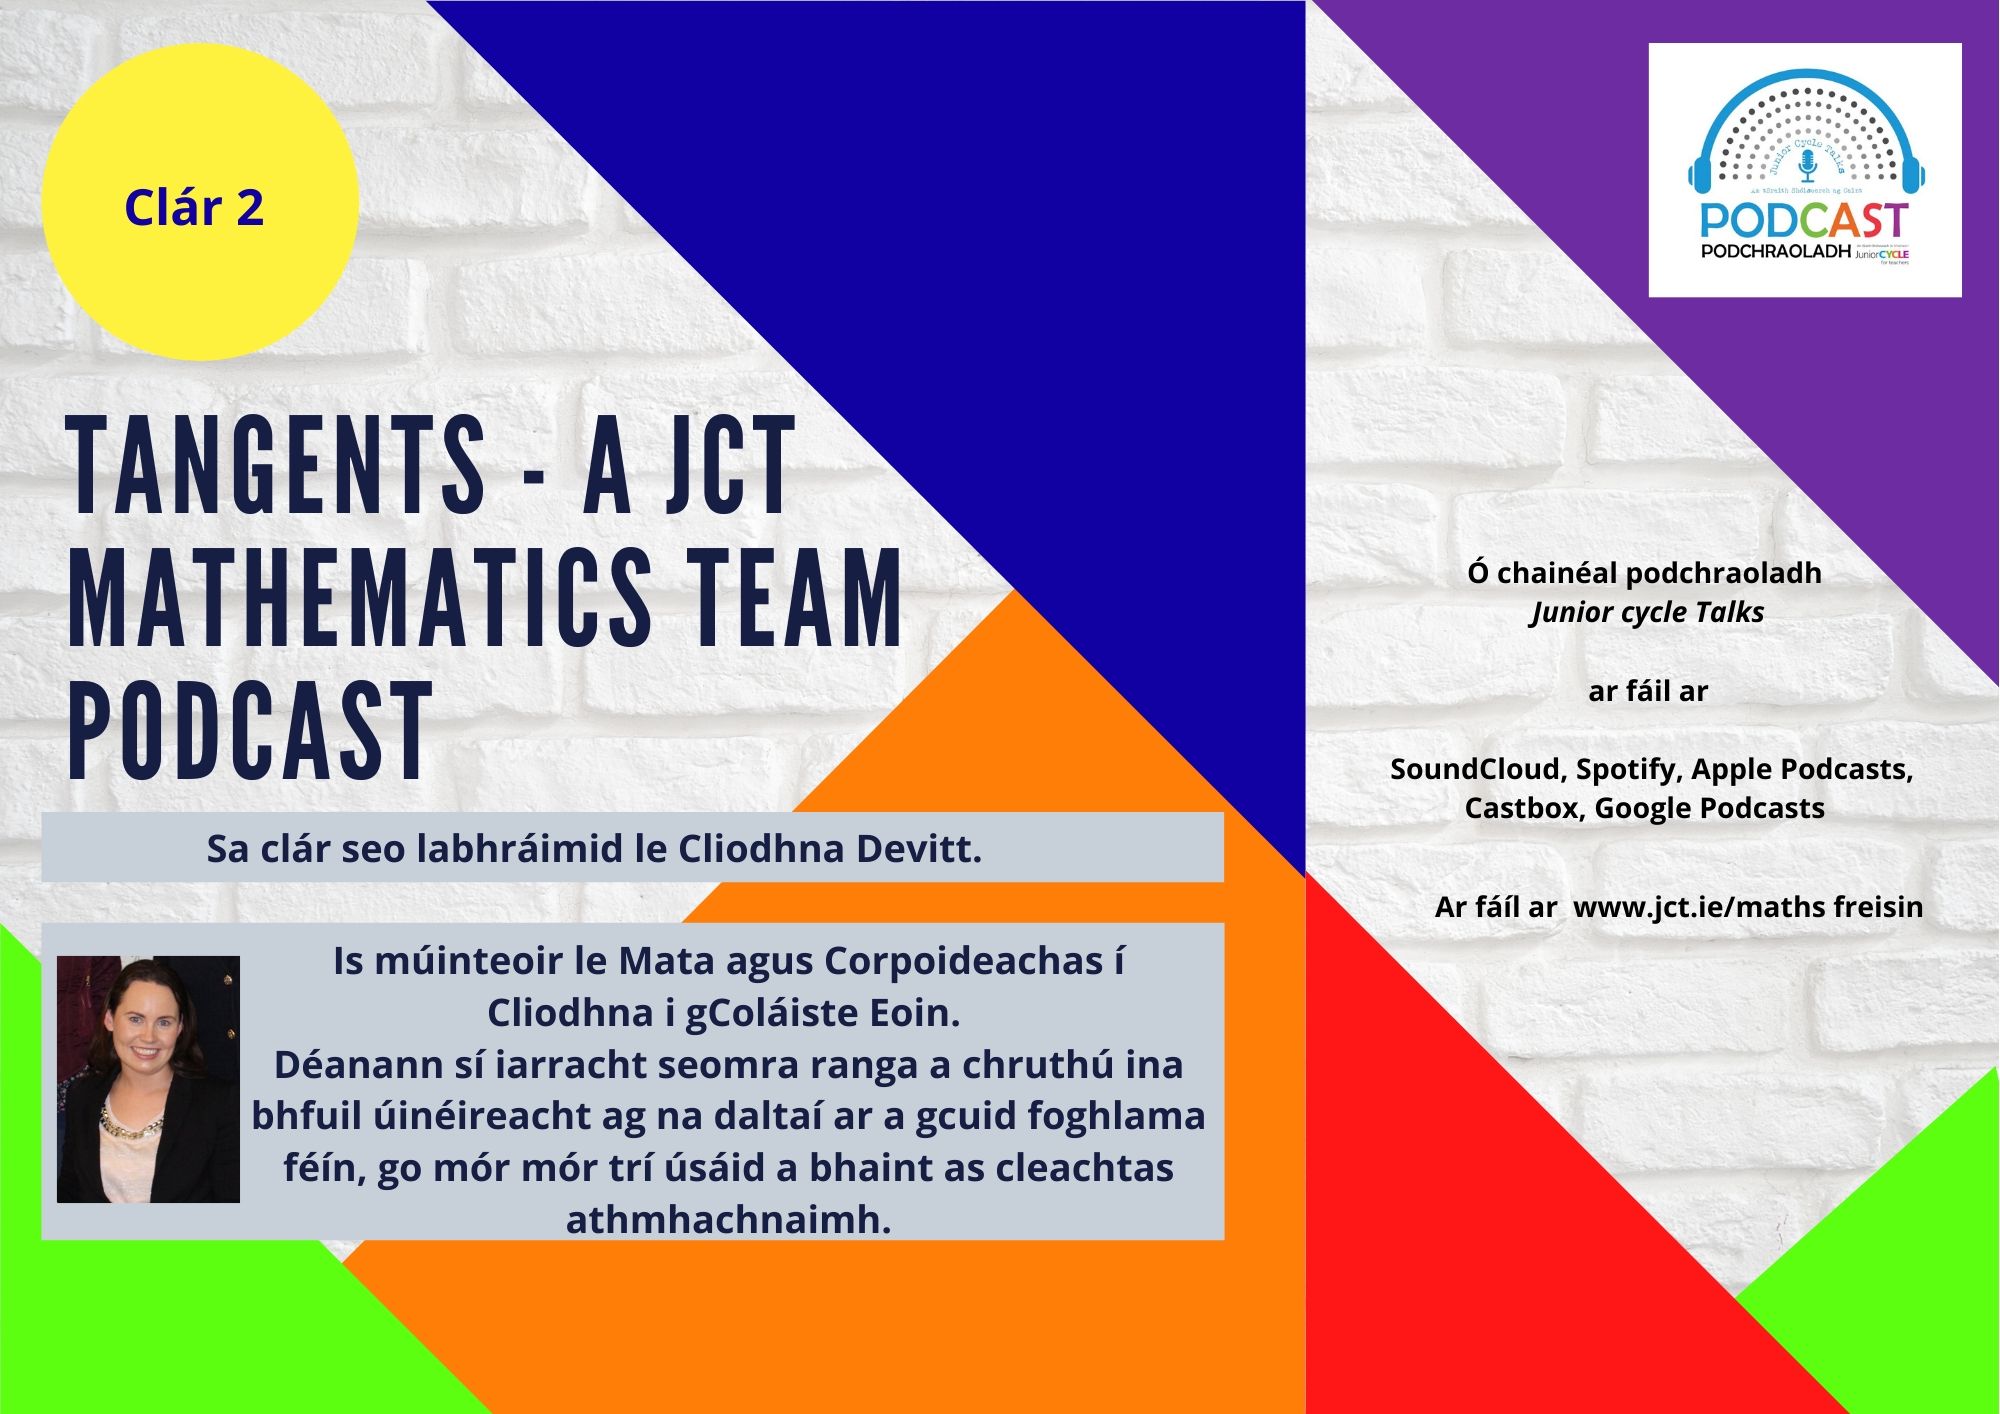 Tangents - A JCT Mathematics Team Podcast Episode 1